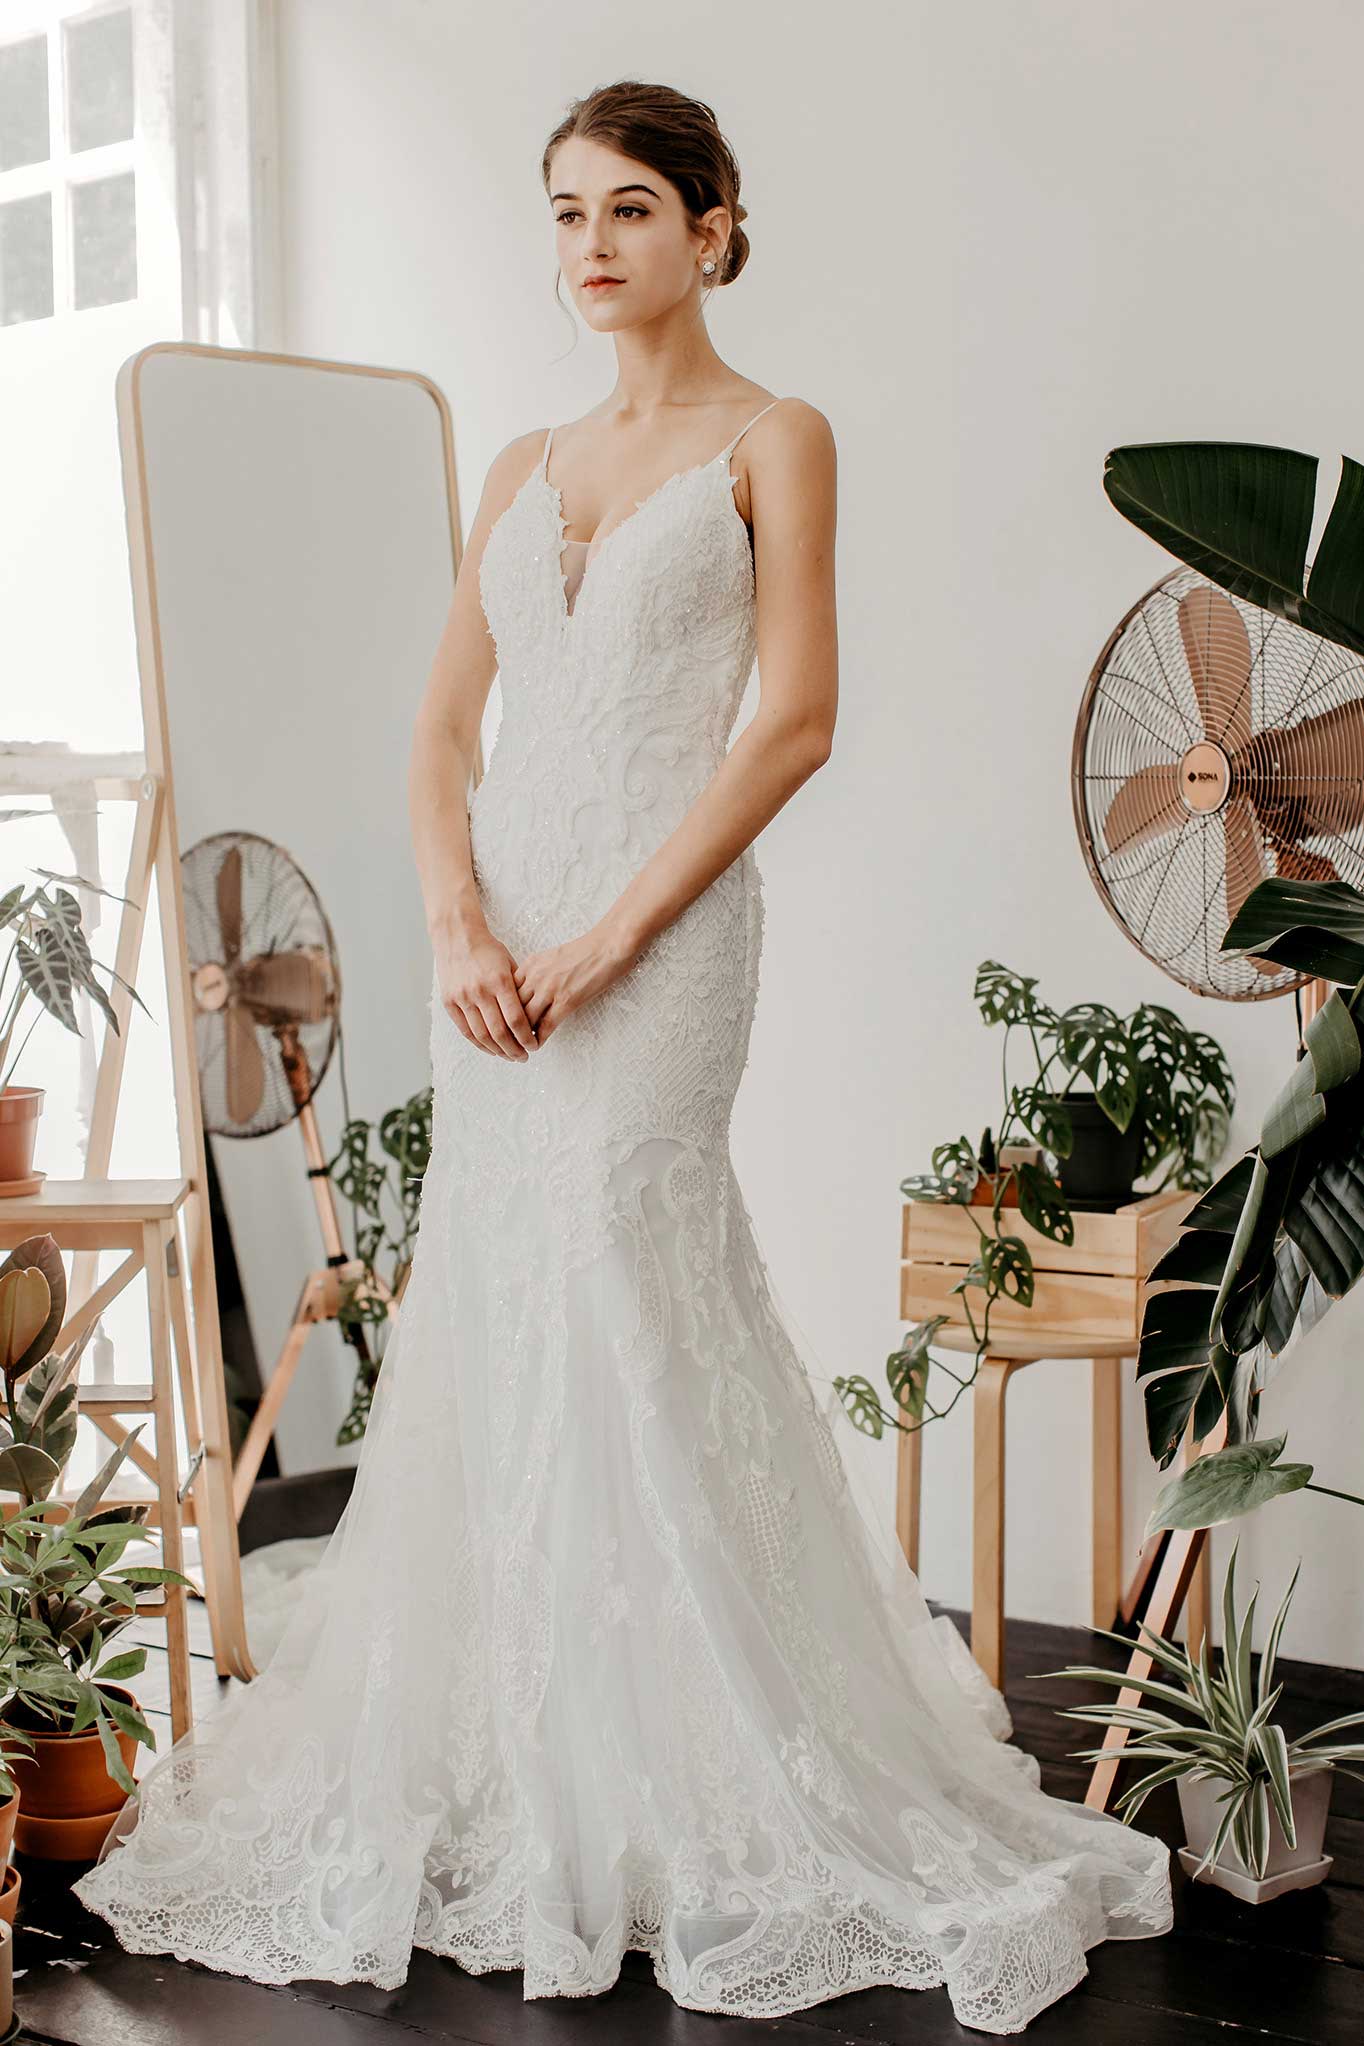 Odelia-wedding-dress-weddingdress-bridalgown-22_